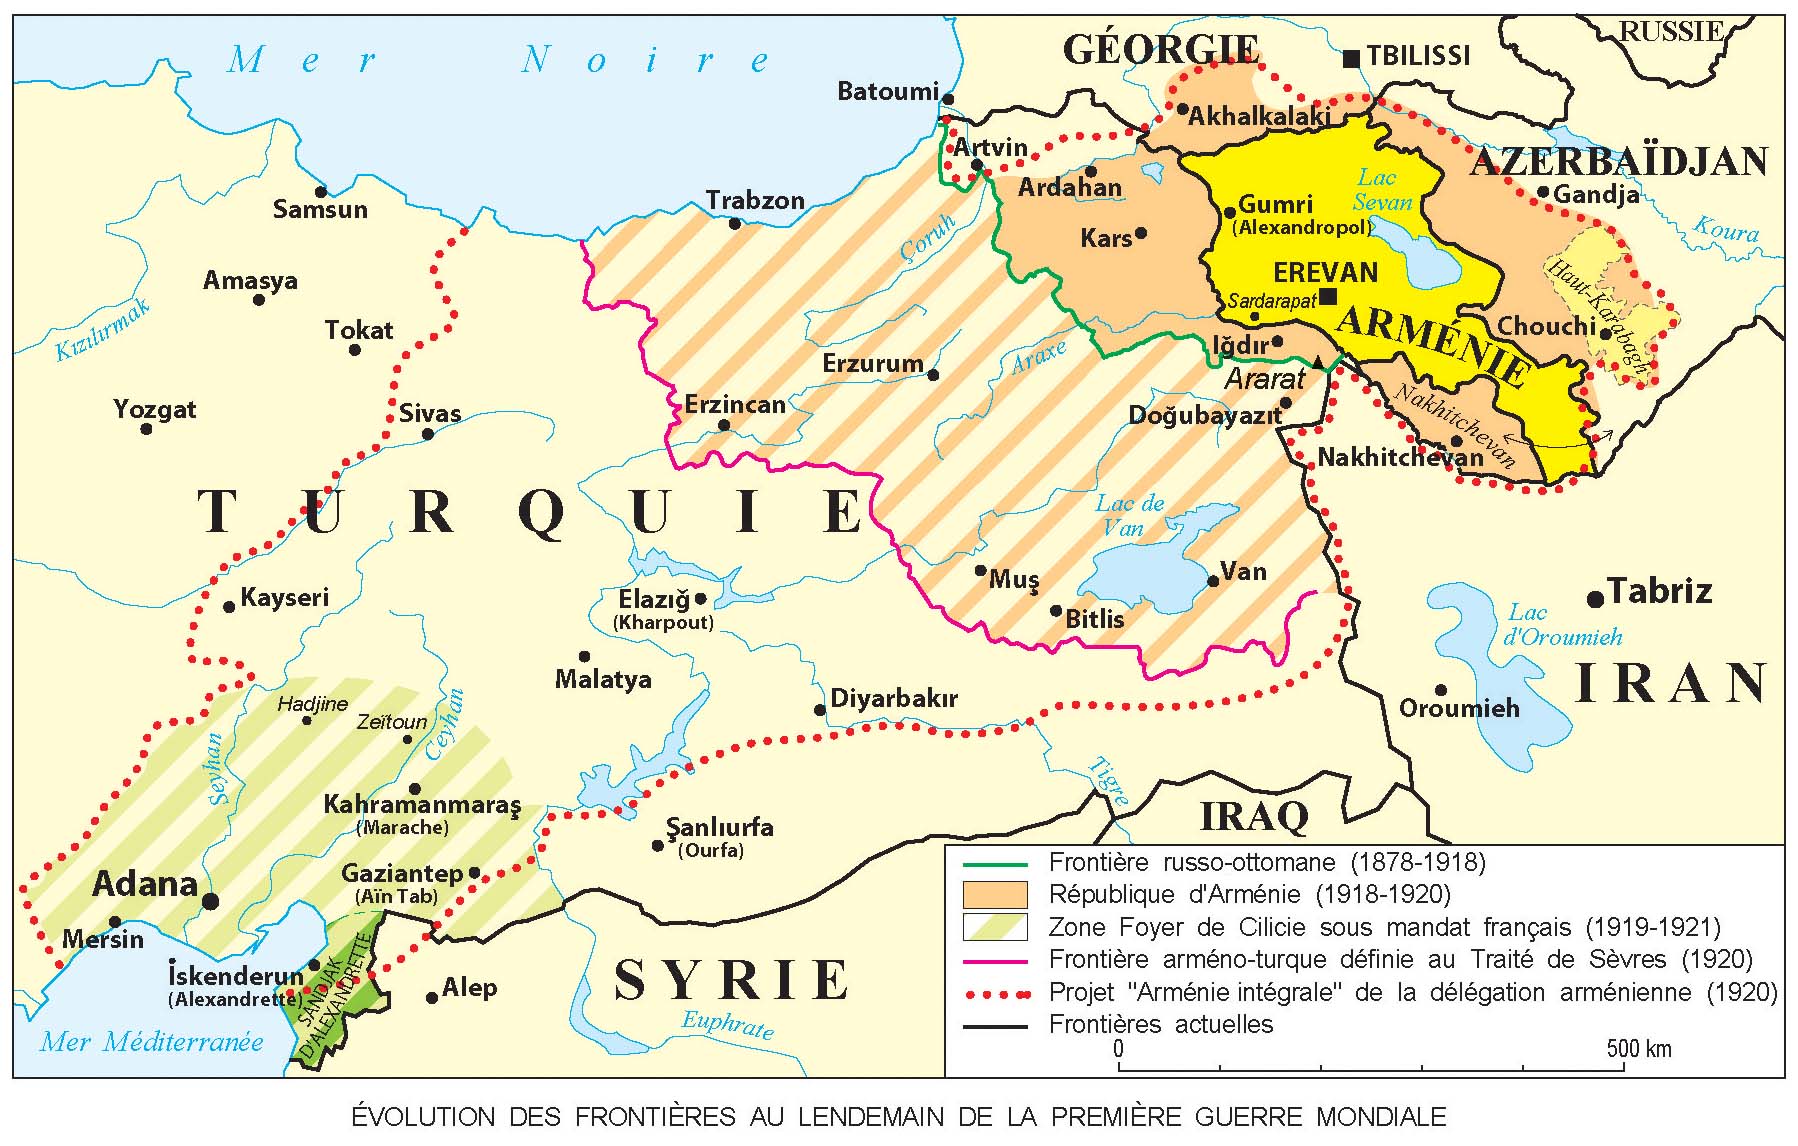 Rate armenia. Карта Западной Армении 1915 года. Территория Армении в 1915 году. Армения границы до 1915 года. Границы Армении до 1915 года карта.